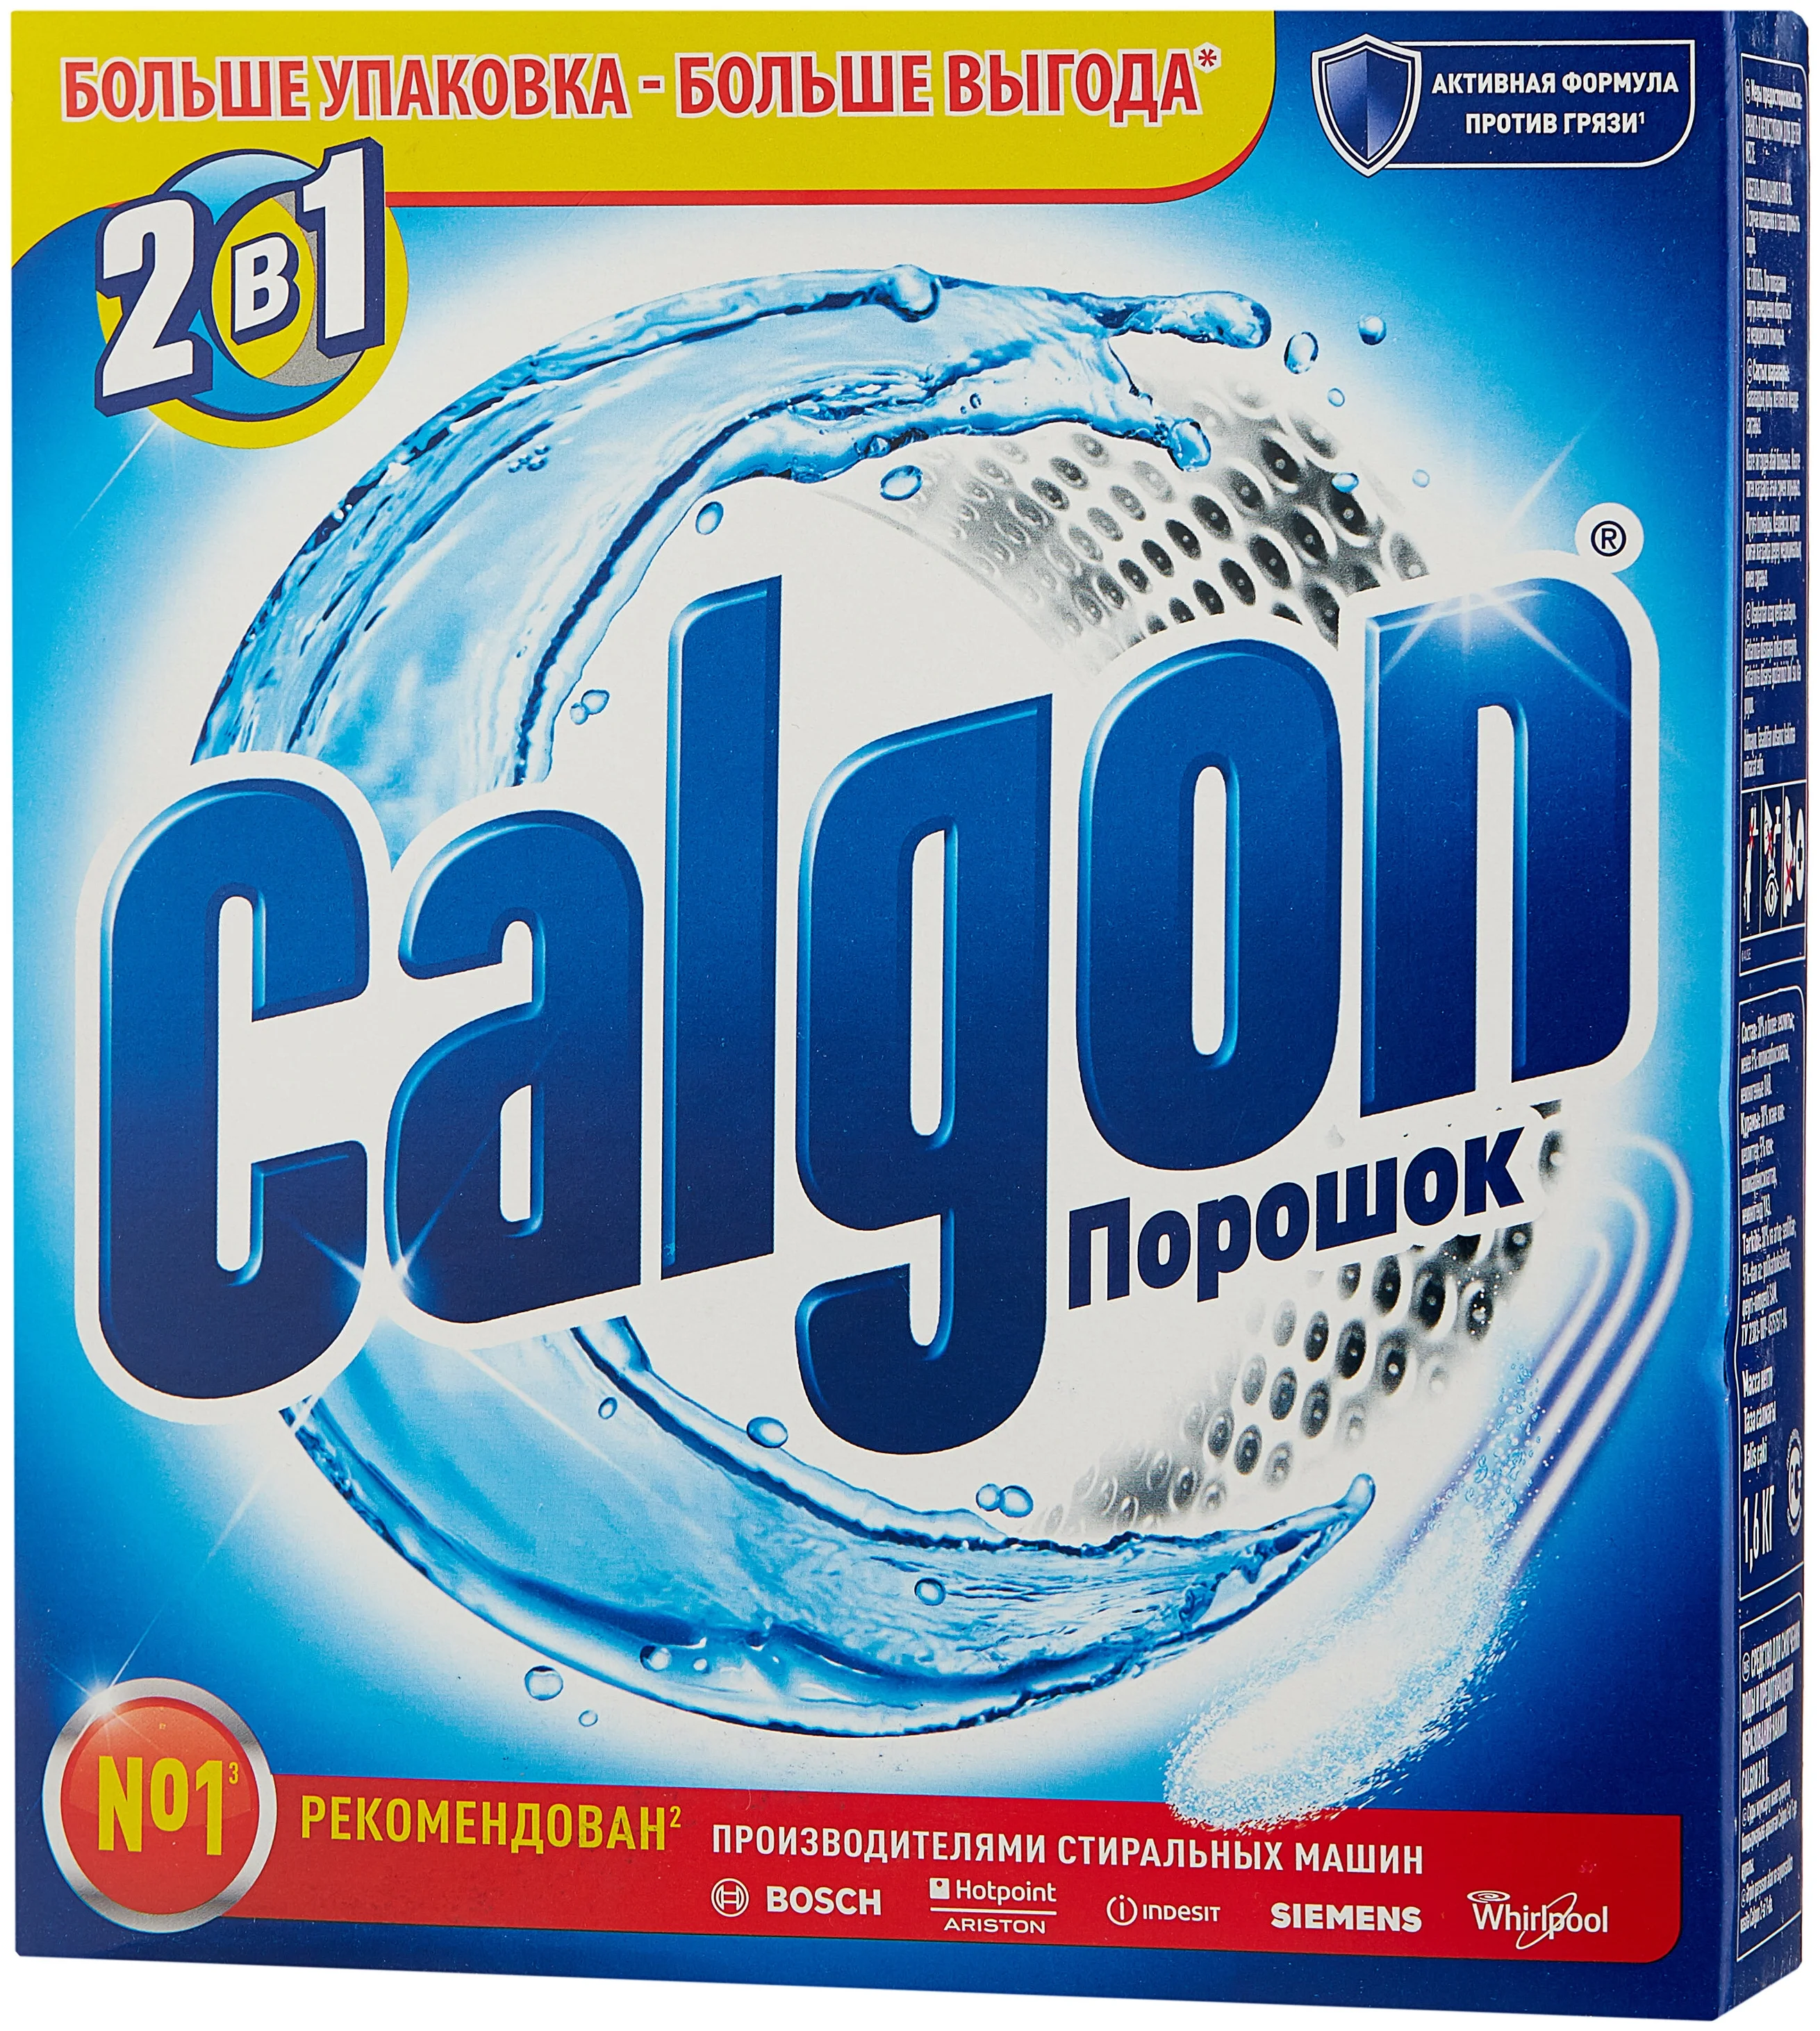 Calgon, 1,6 кг - для смягчения воды, устранения неприятного запаха